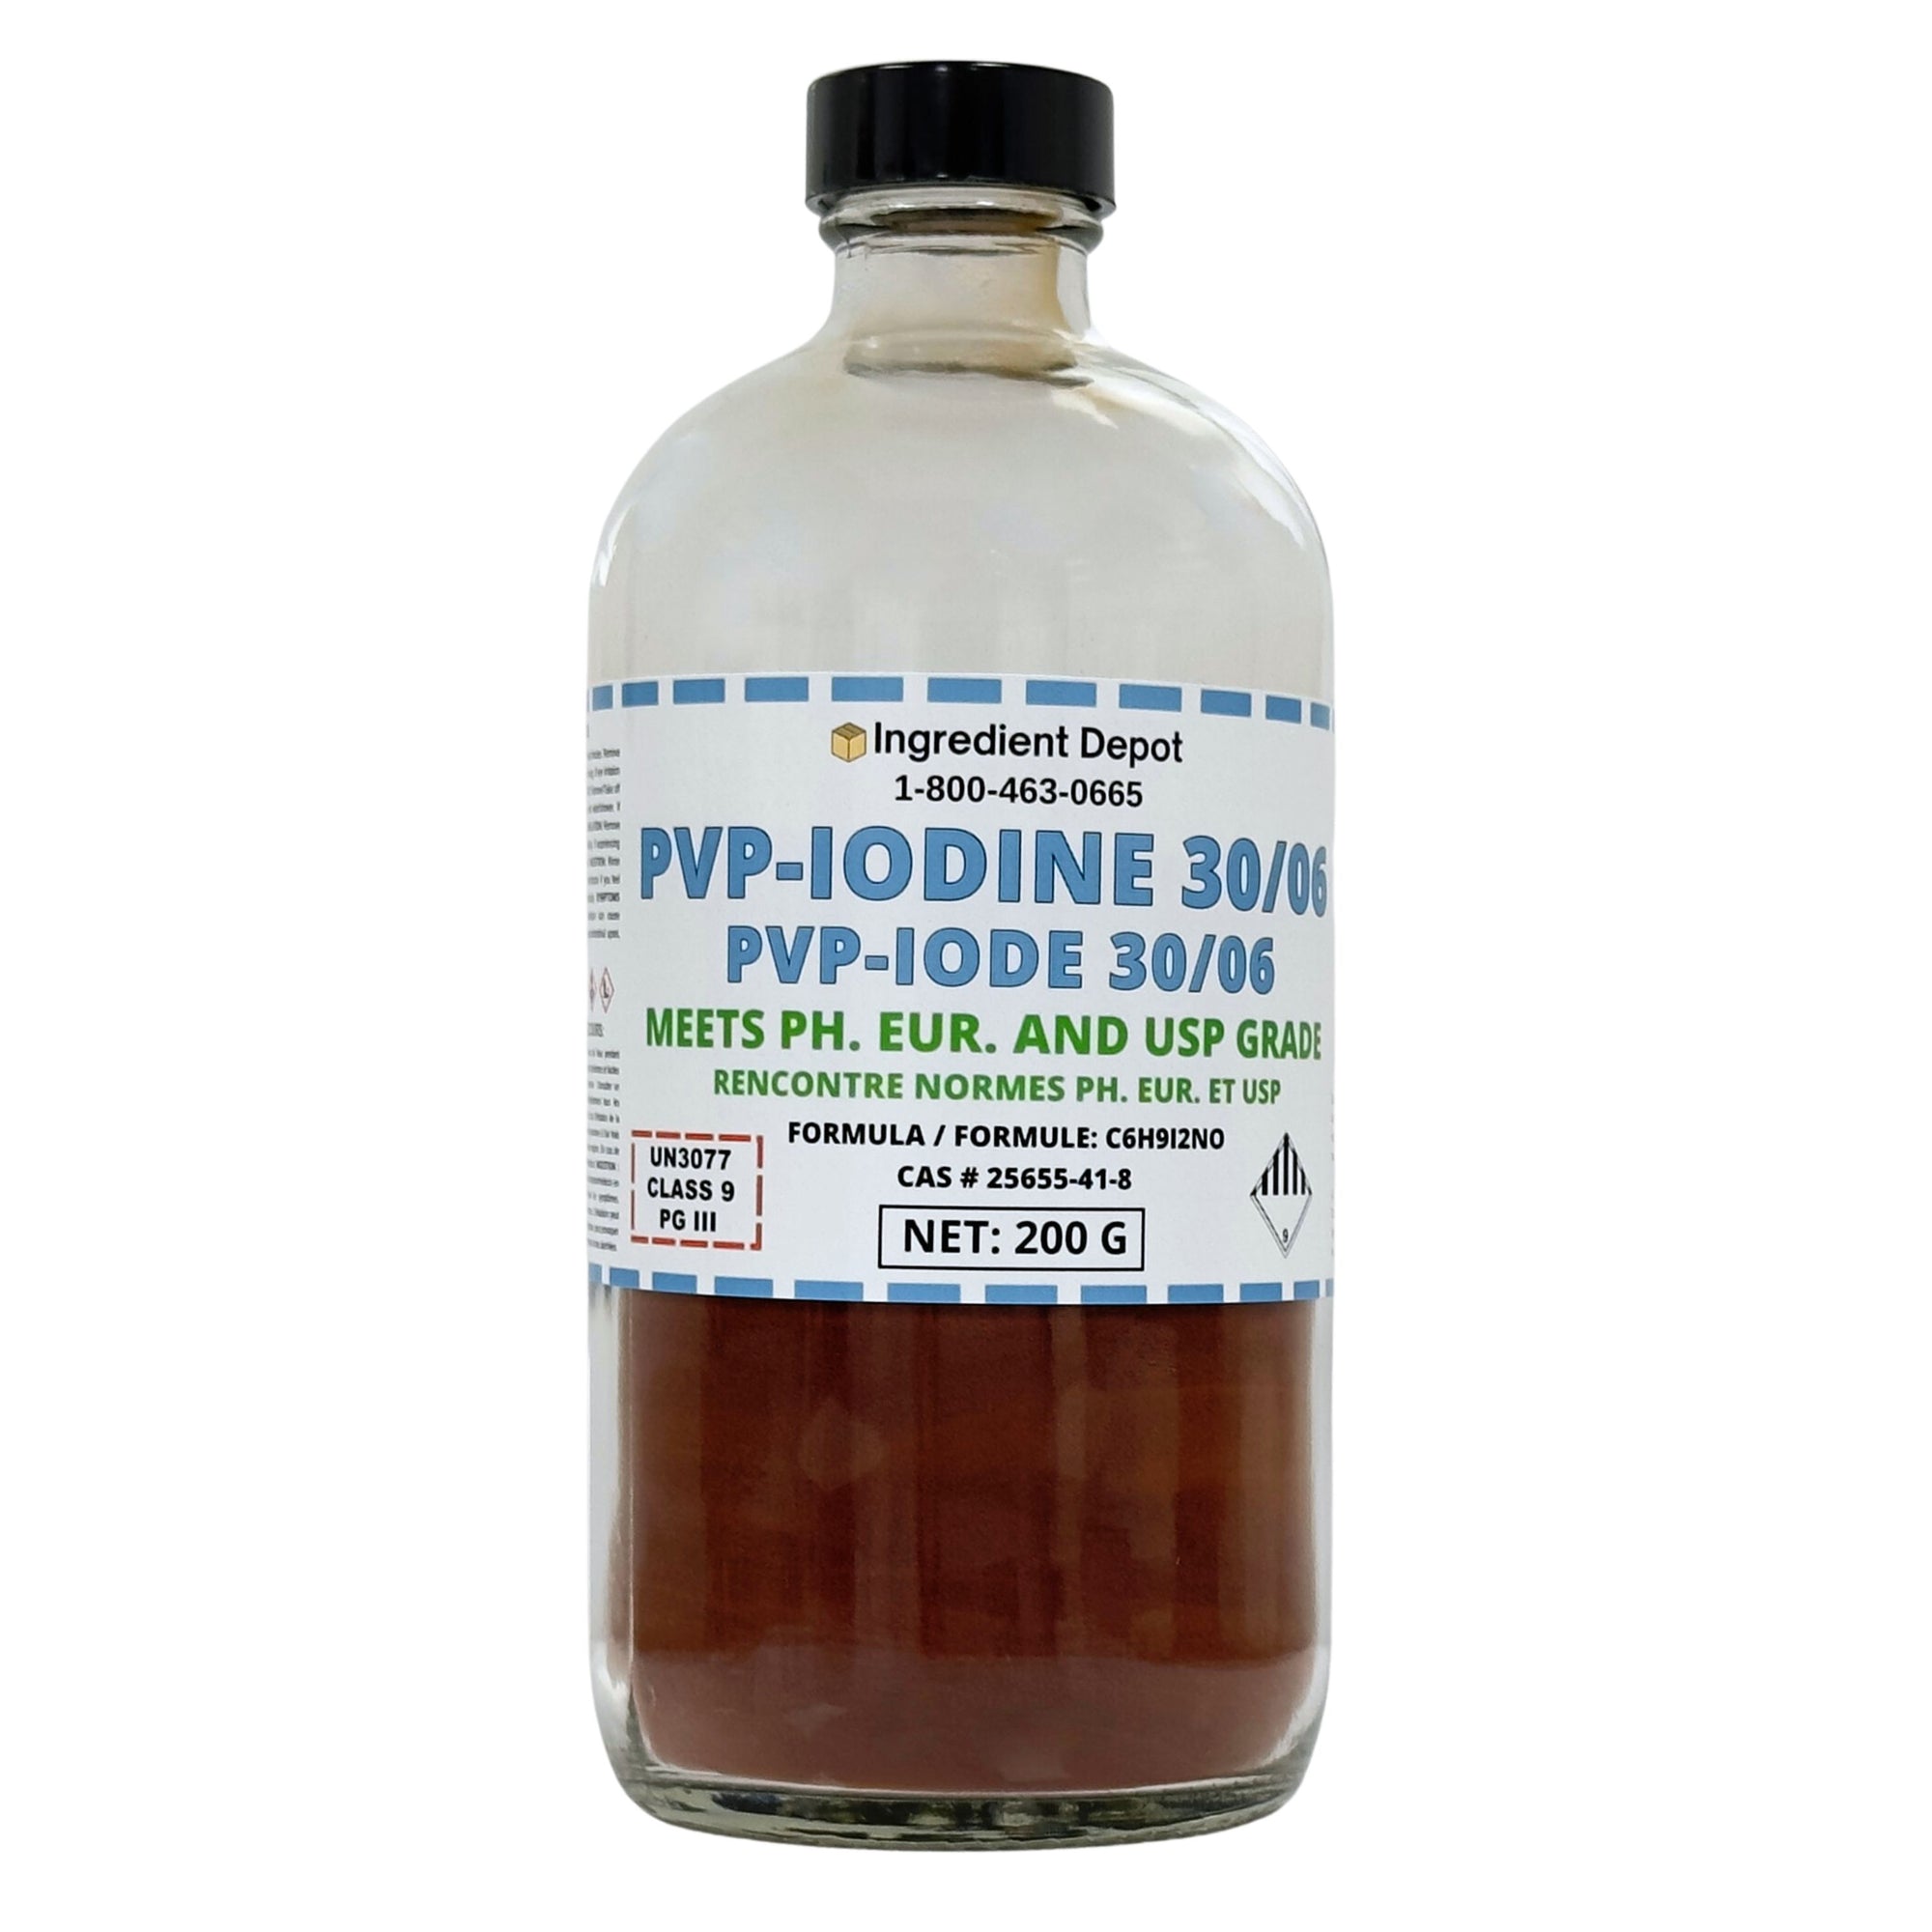 PVP-Iodine 30/06 (PVP-I, Povidone-Iodine) 200g